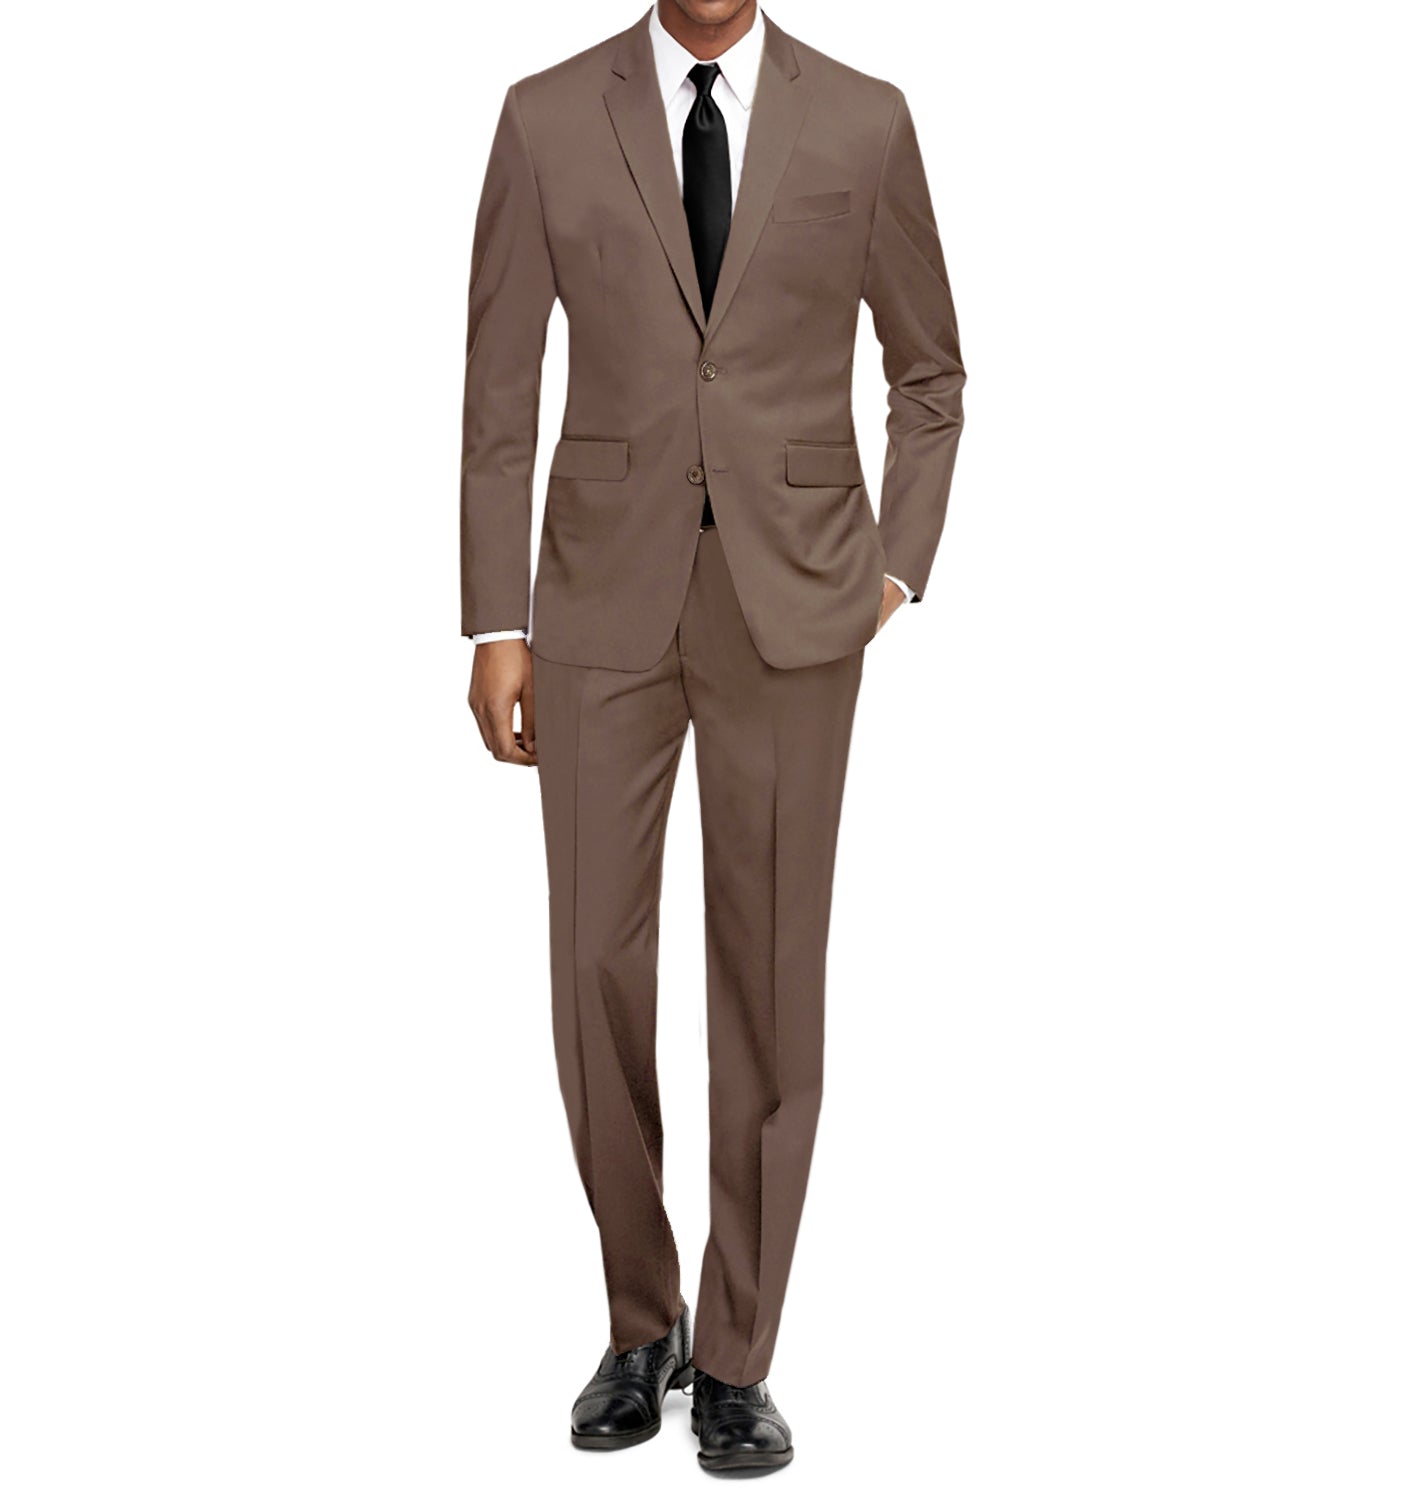 Braveman Men's Formal Two Piece 2-Piece Slim Fit Cut Suit Set DAILYHAUTE